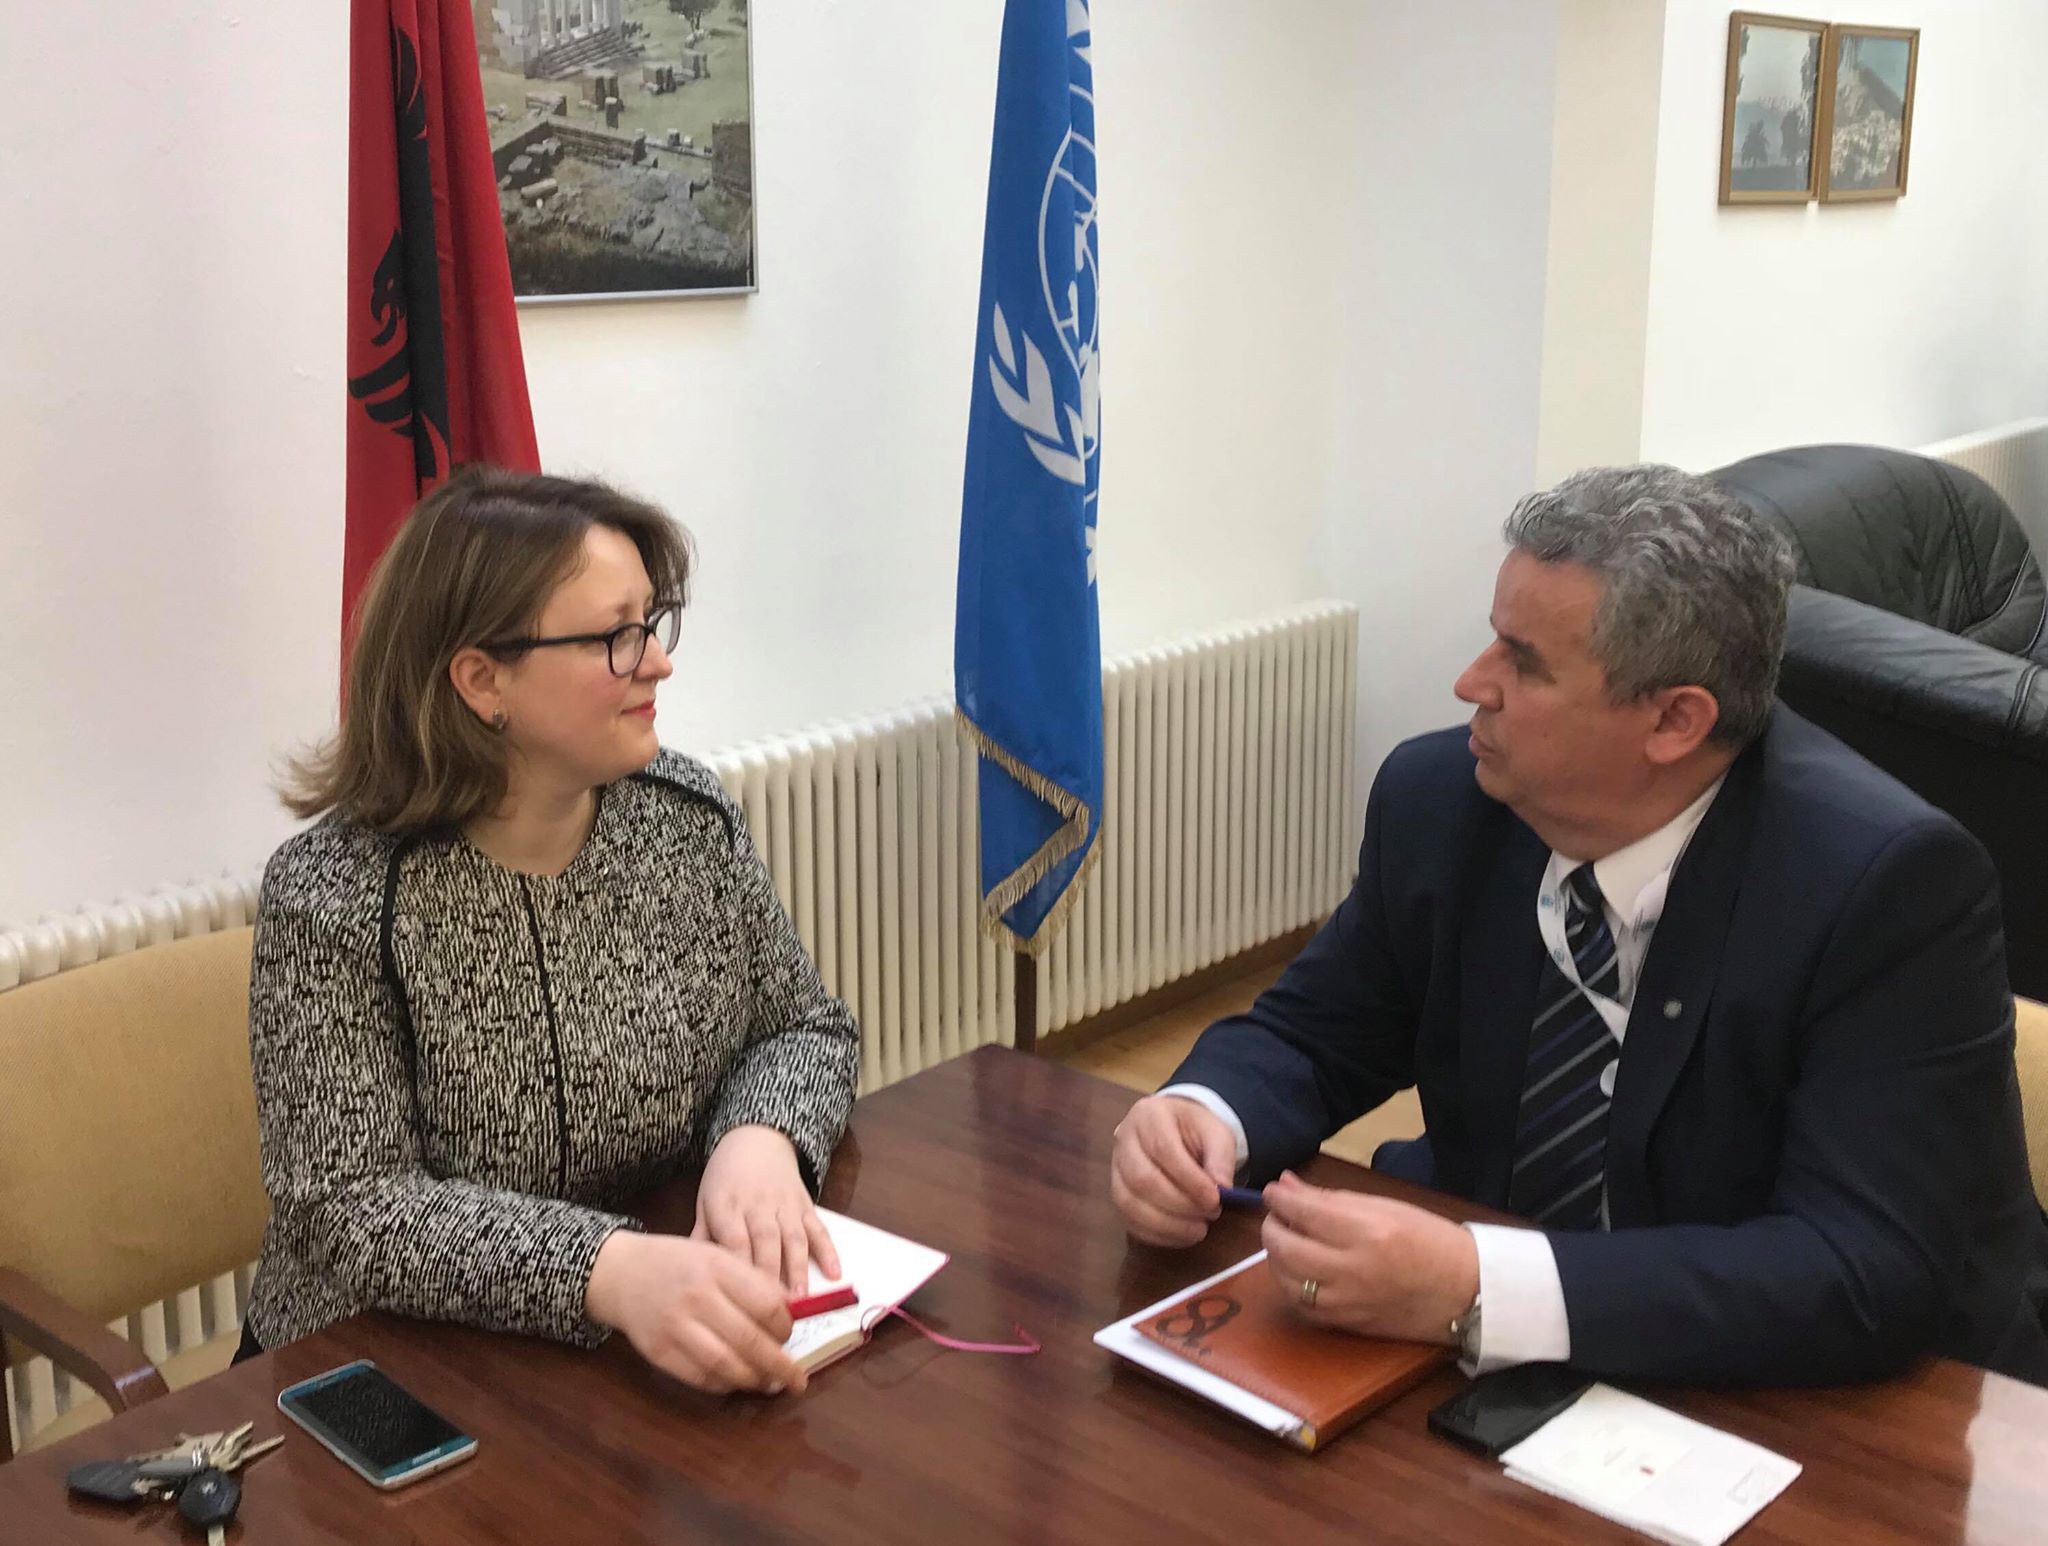 Ambasadorja shqiptare në OKB pret gazetarin nderkombëtar nga Presheva në Gjenevë | Presheva Jonë